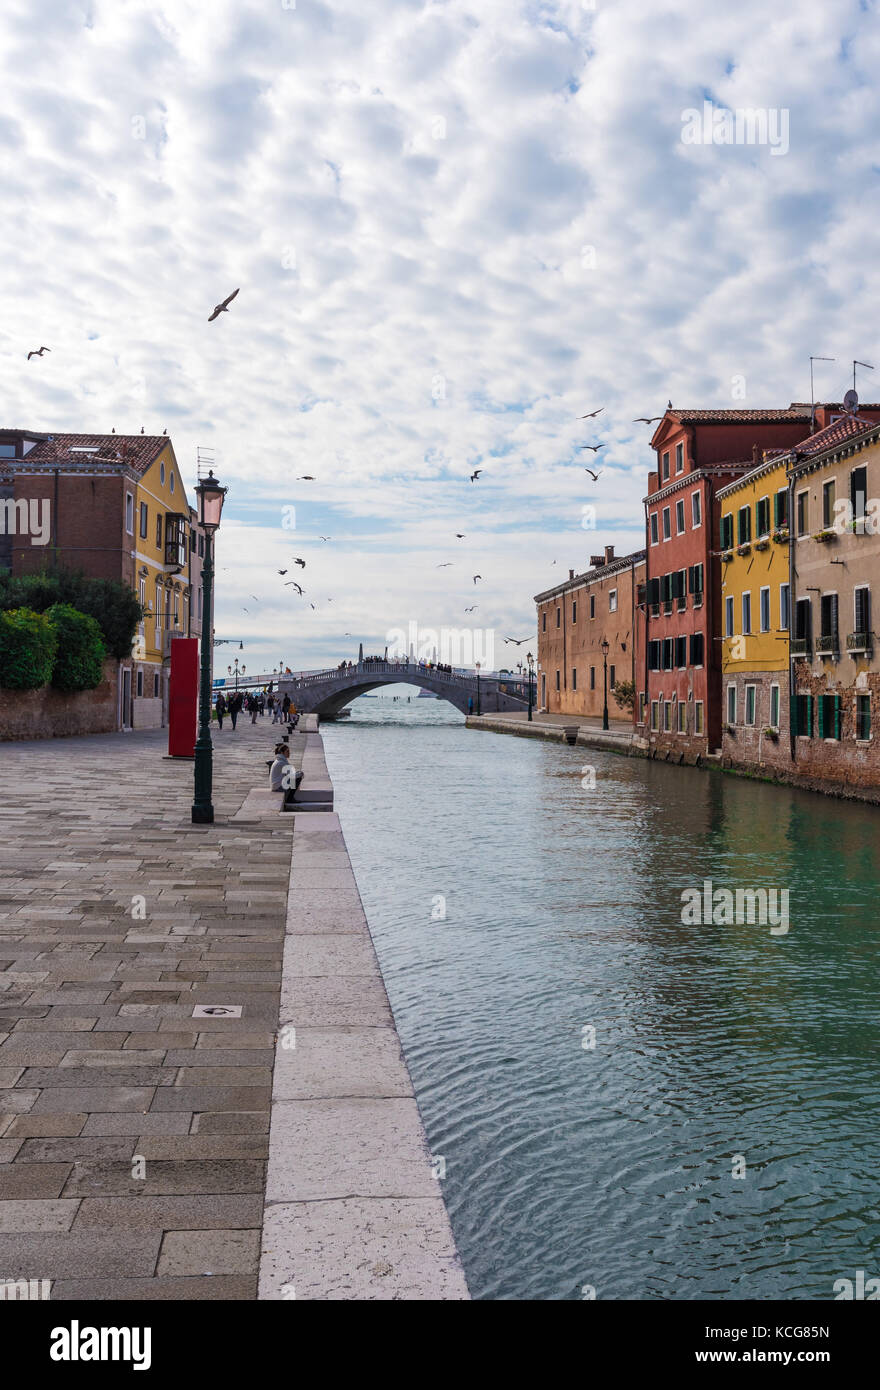 Venezia (Italia) - La città sul mare. La maggior parte dei luoghi più caratteristici della famosa città di mare, una delle principali attrazioni turistiche del mondo. Foto Stock